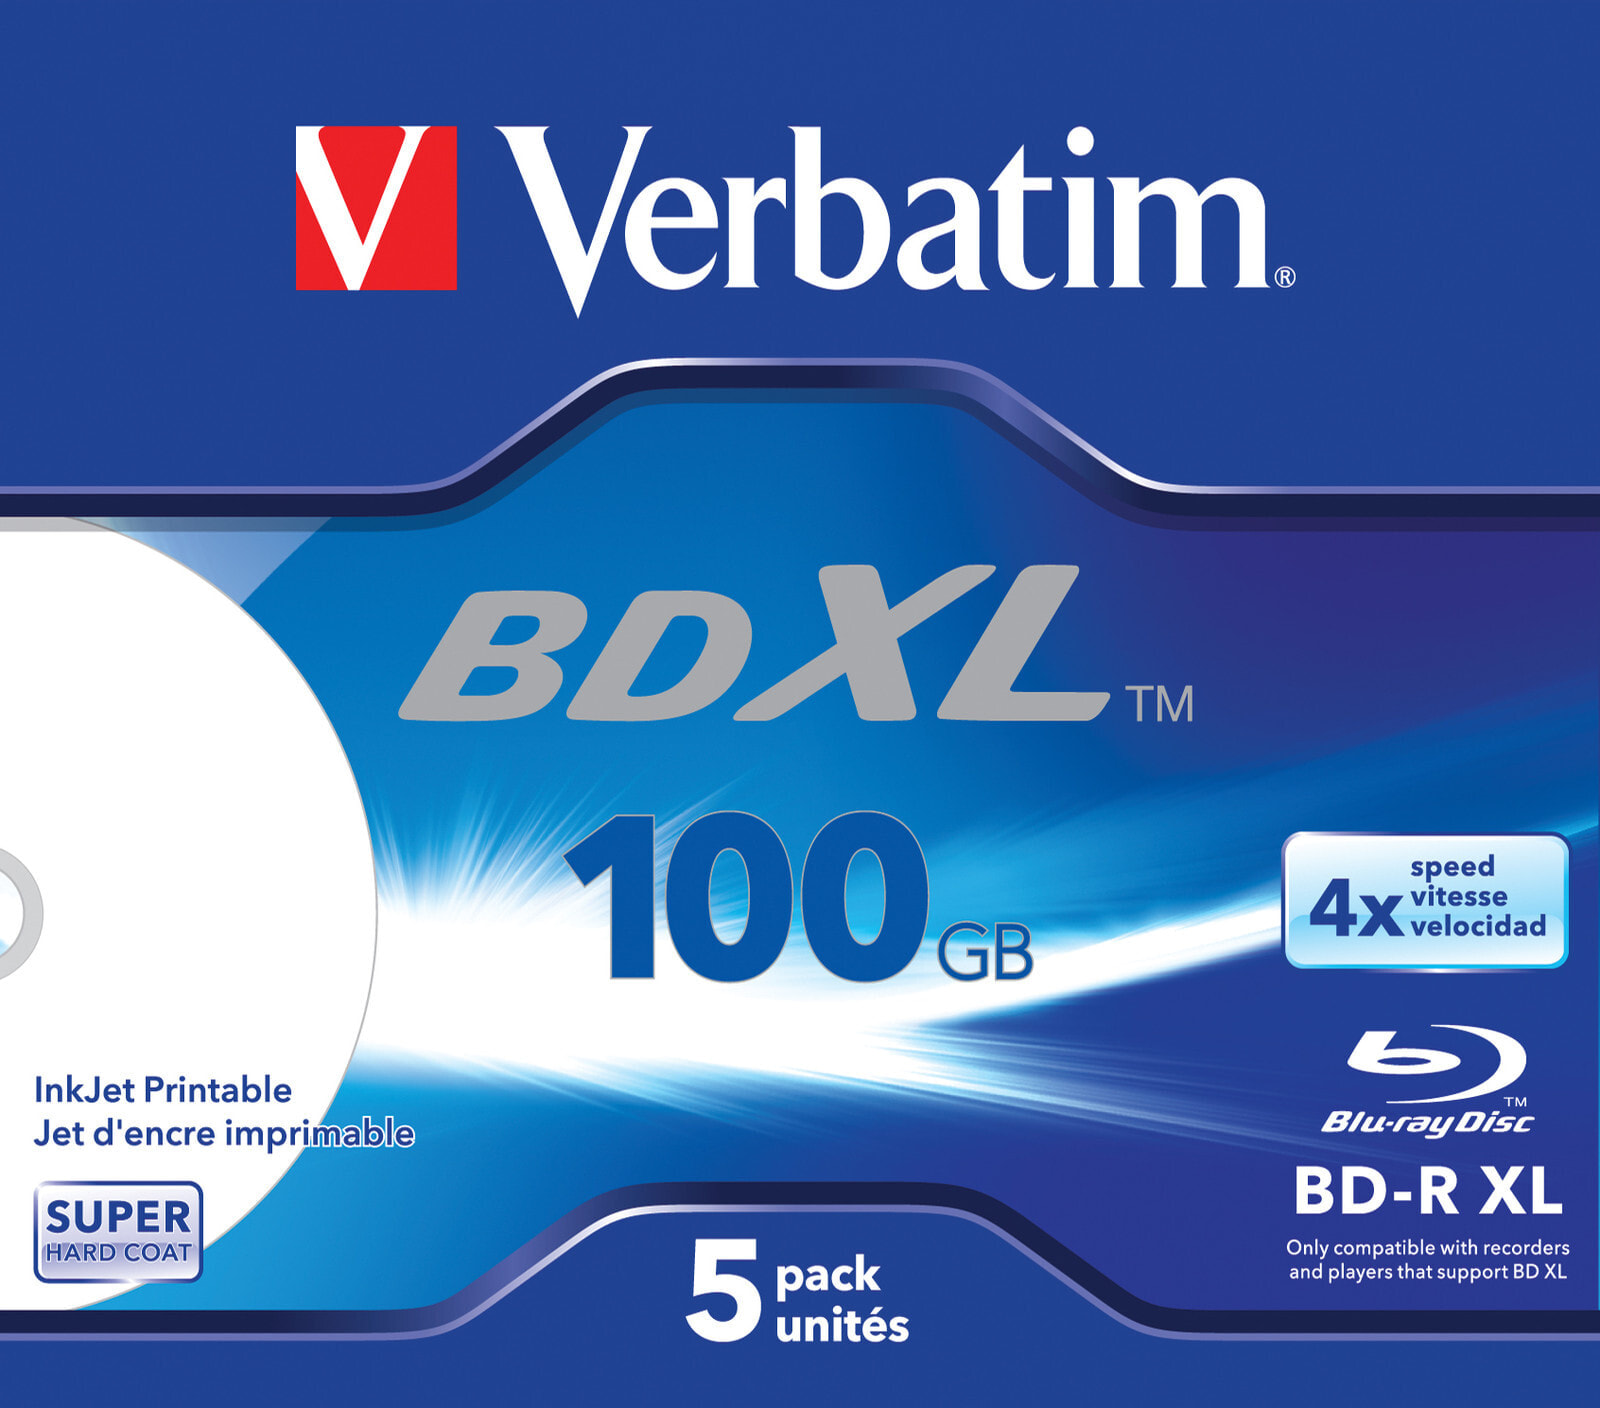 Verbatim BD-R XL: 100 Гб, 4x, возможность струйной печати по всей поверхности, 5 шт. в коробке 43789